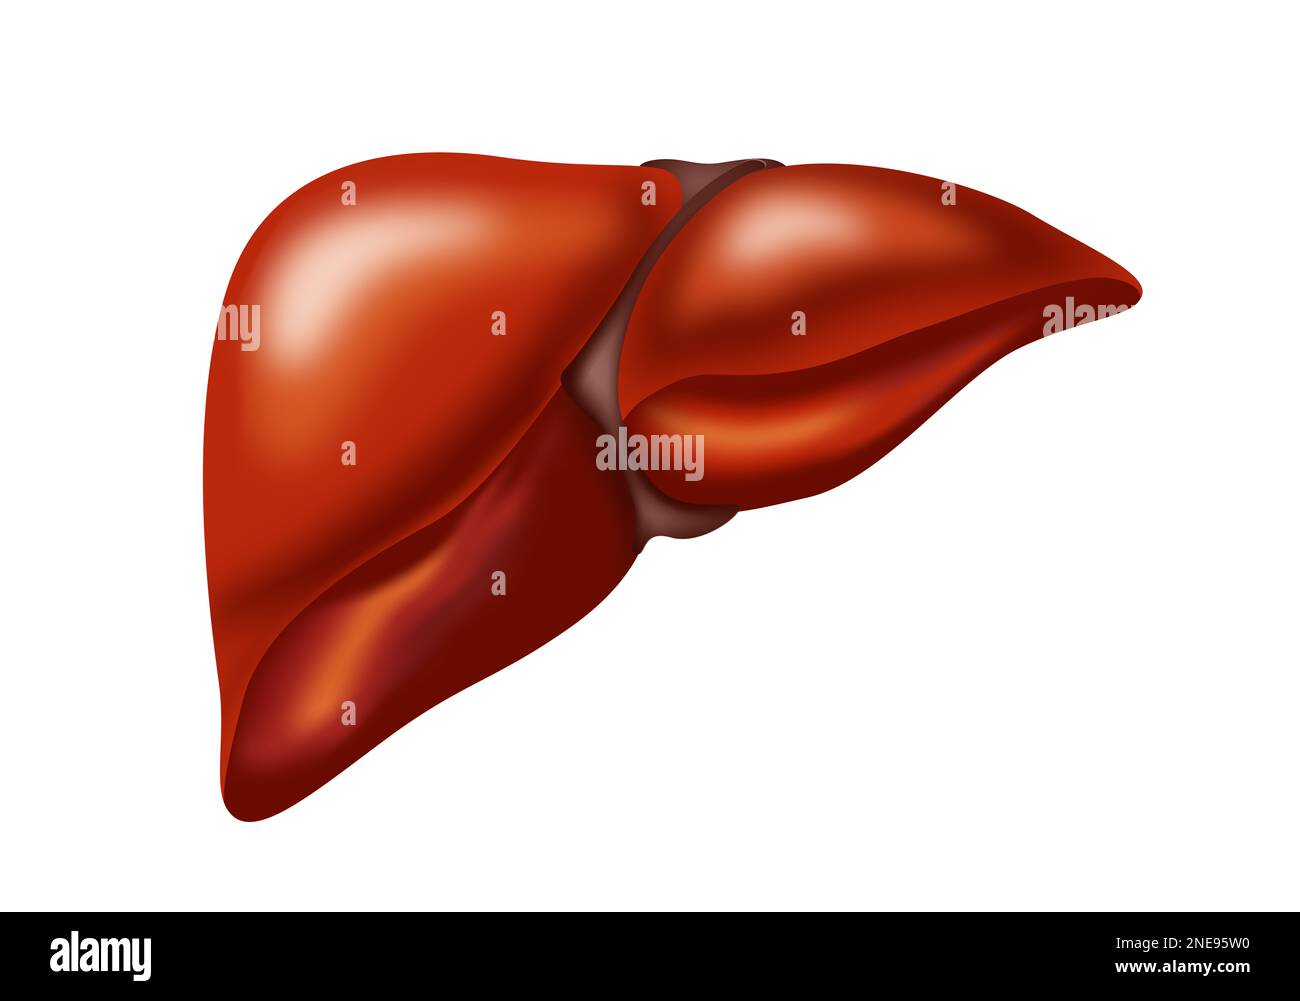 Illustrazione del fegato su sfondo bianco. Anatomia umana Foto Stock